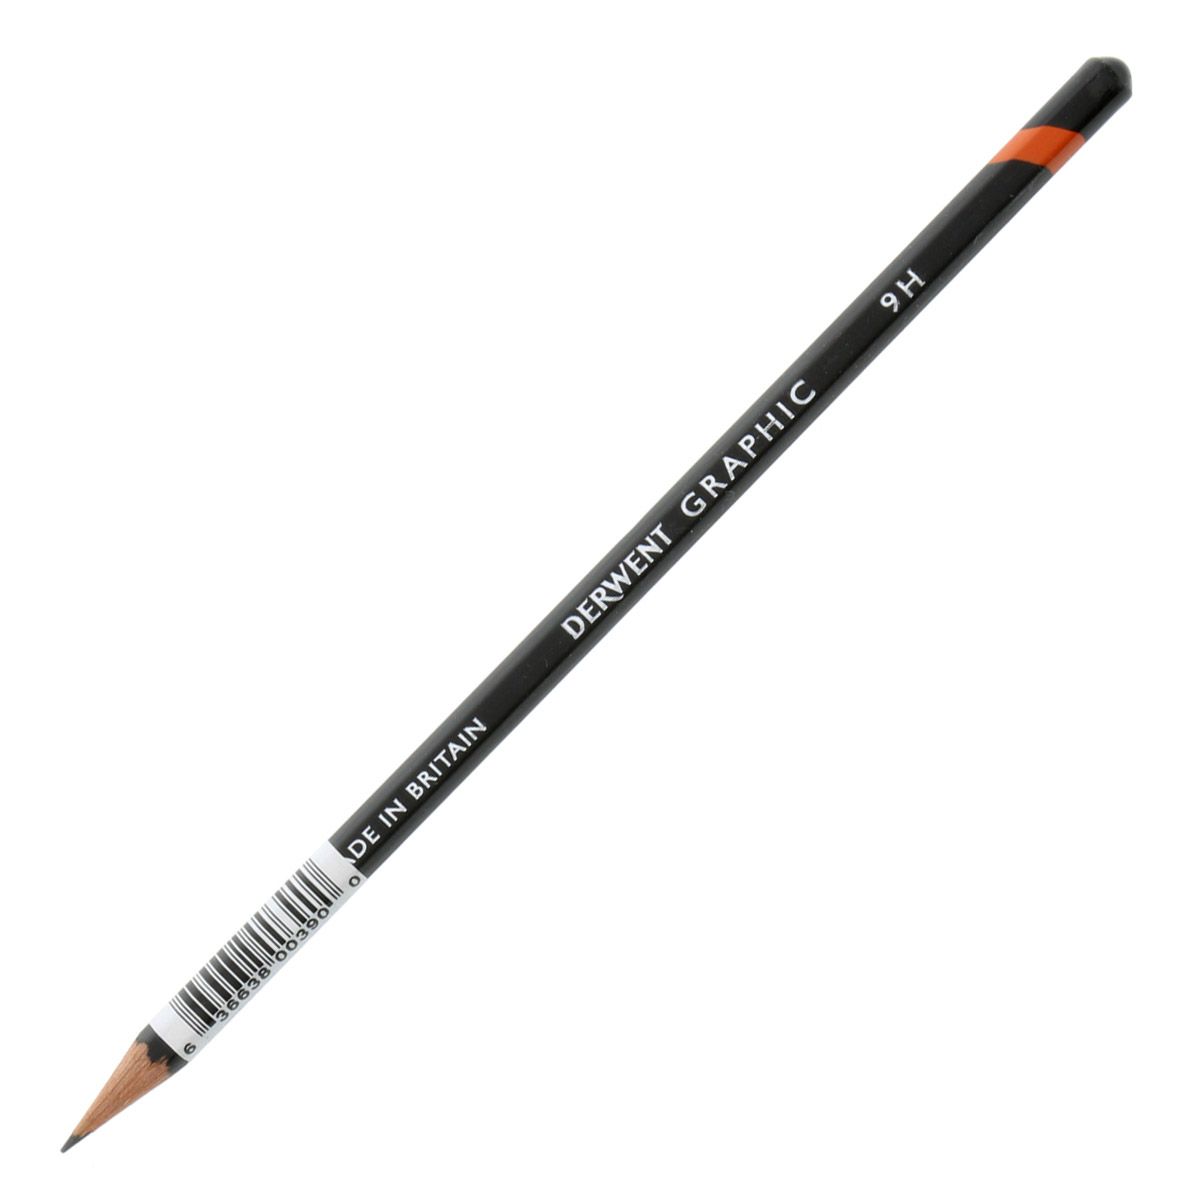 Derwent Graphic Pencil - 9H